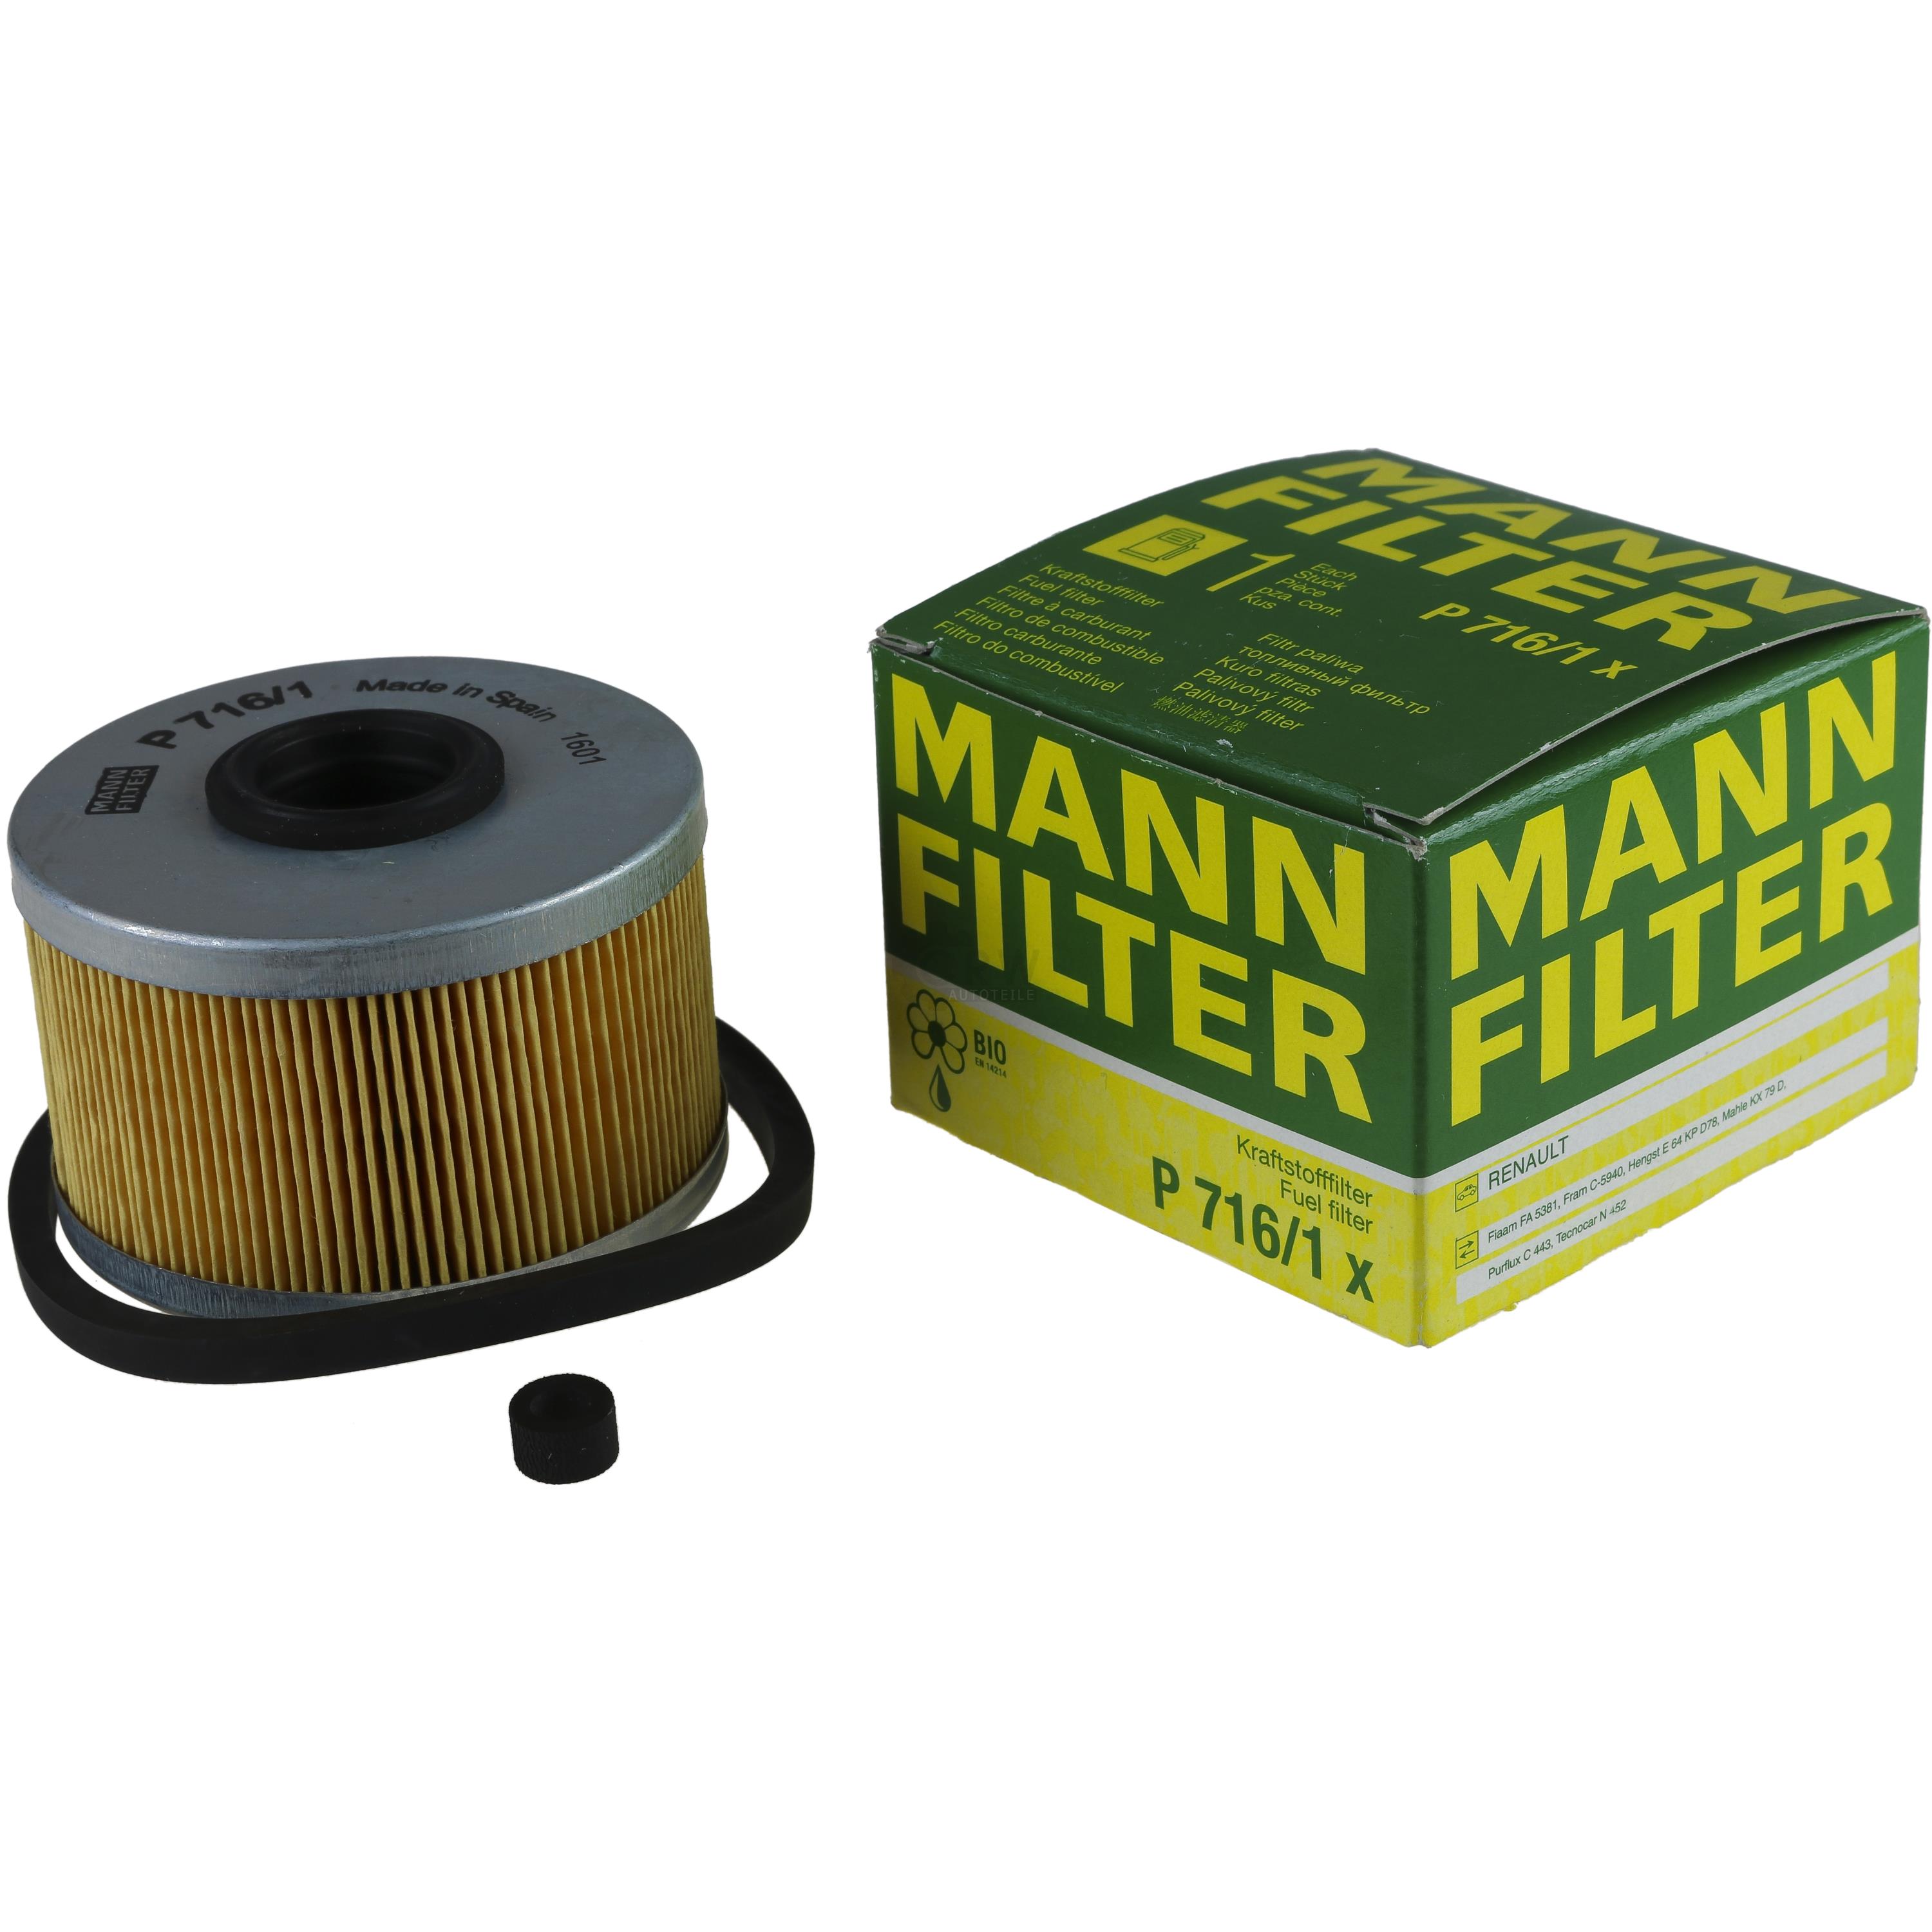 MANN-FILTER Kraftstofffilter P 716/1 x Fuel Filter